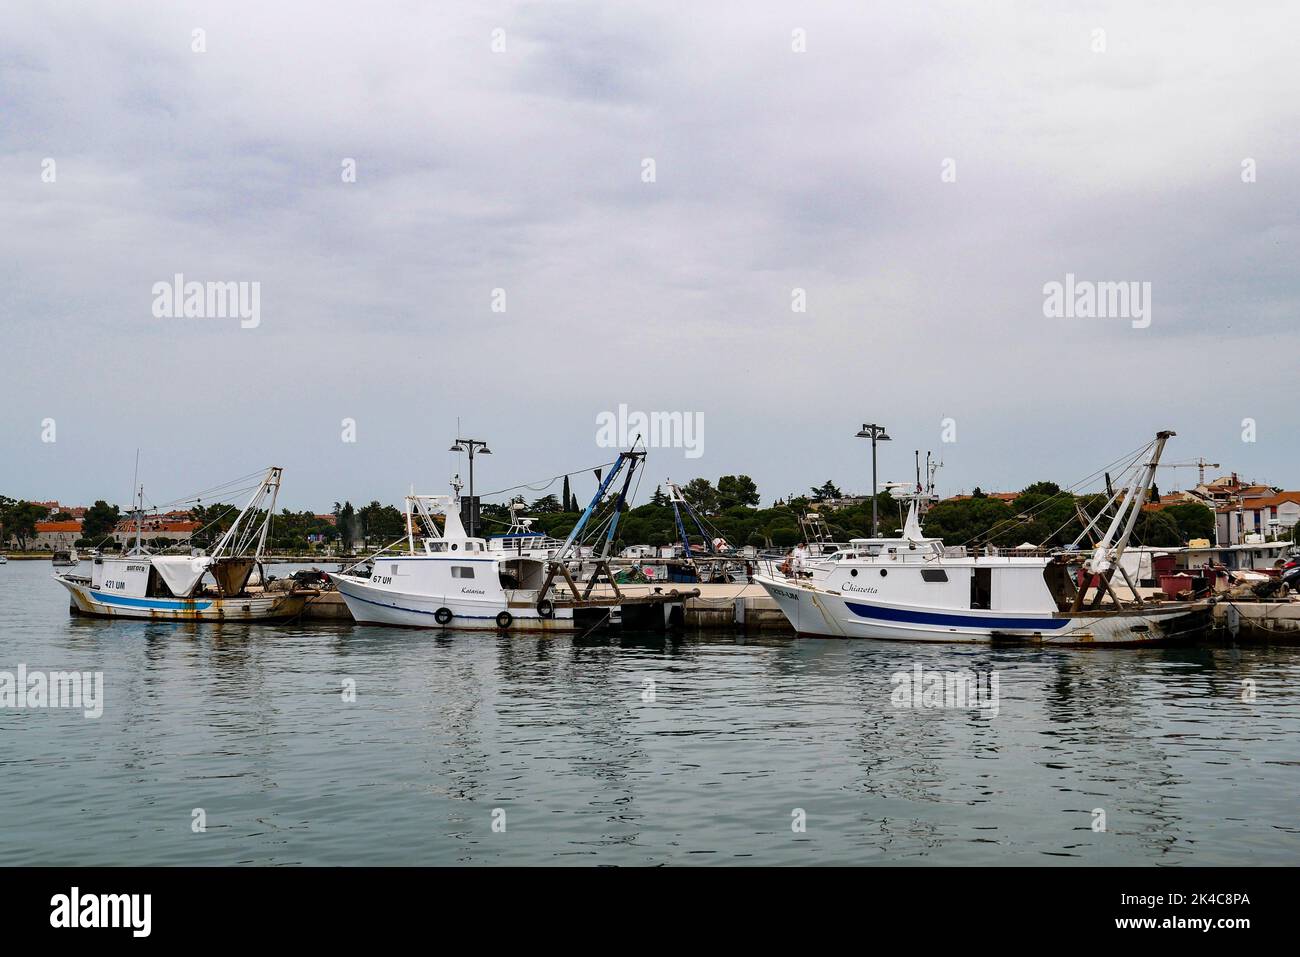 The yachts and sailboats on the port of Marina Rovinj, Croatia Stock Photo